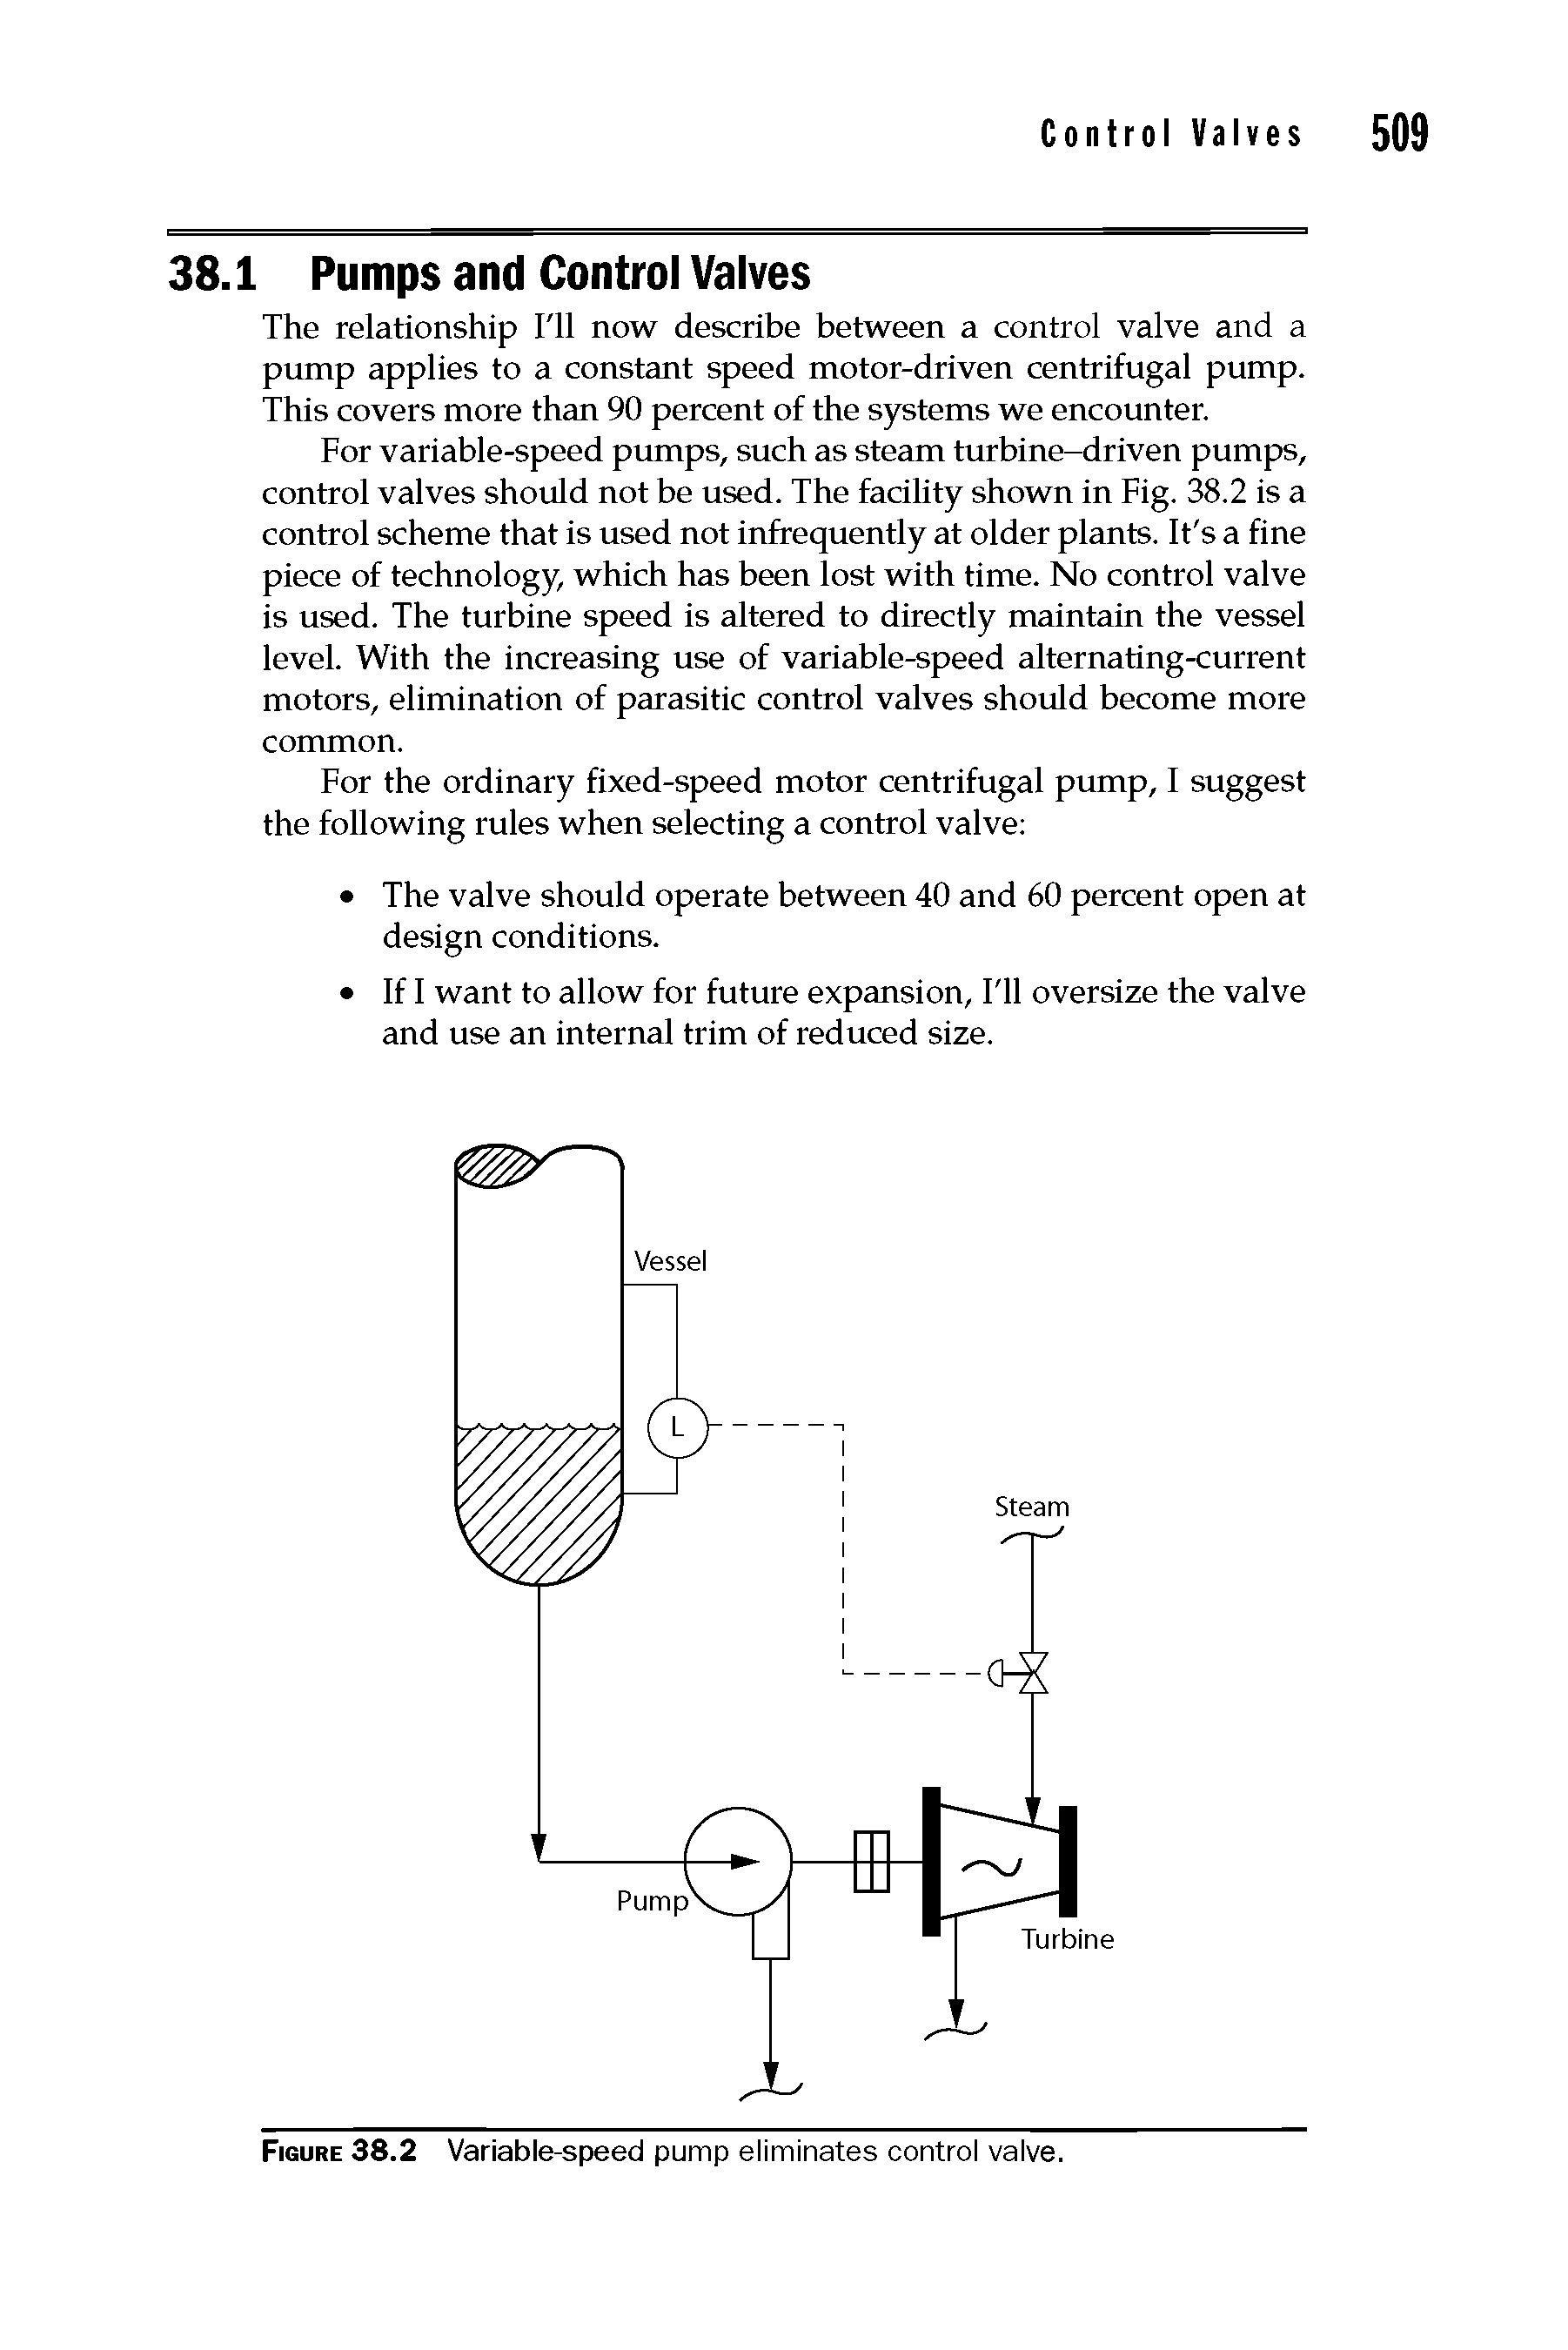 Figure 38.2 Variable-speed pump eliminates control valve.